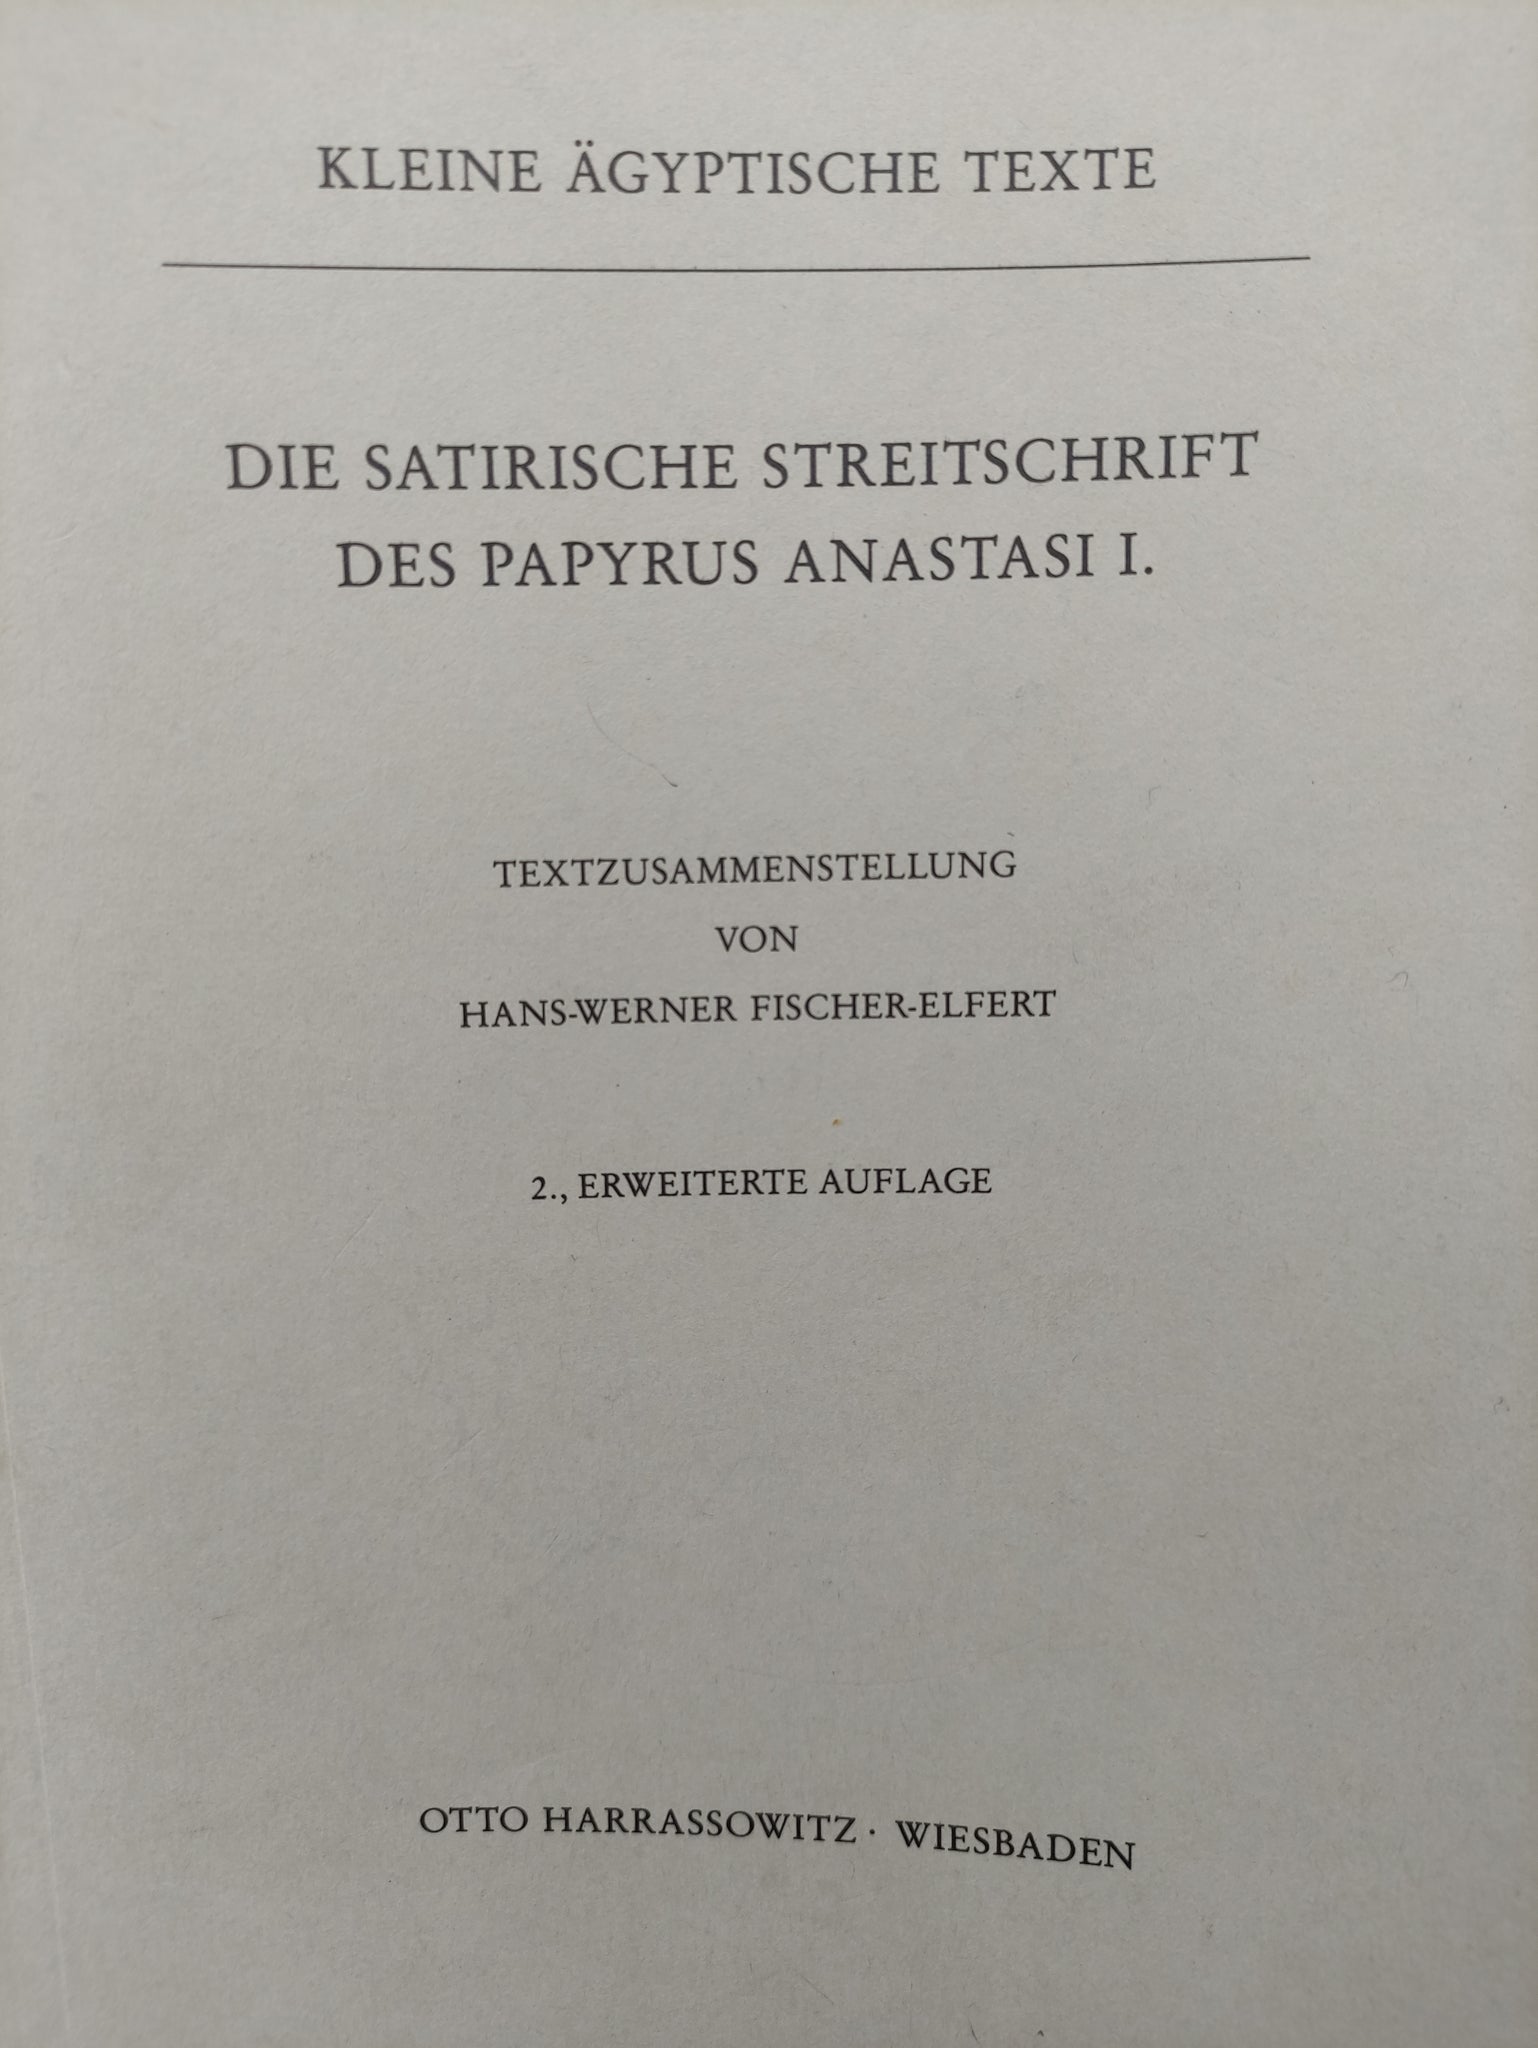 Die Satirische streitschrift des papyrus Anastasi I.